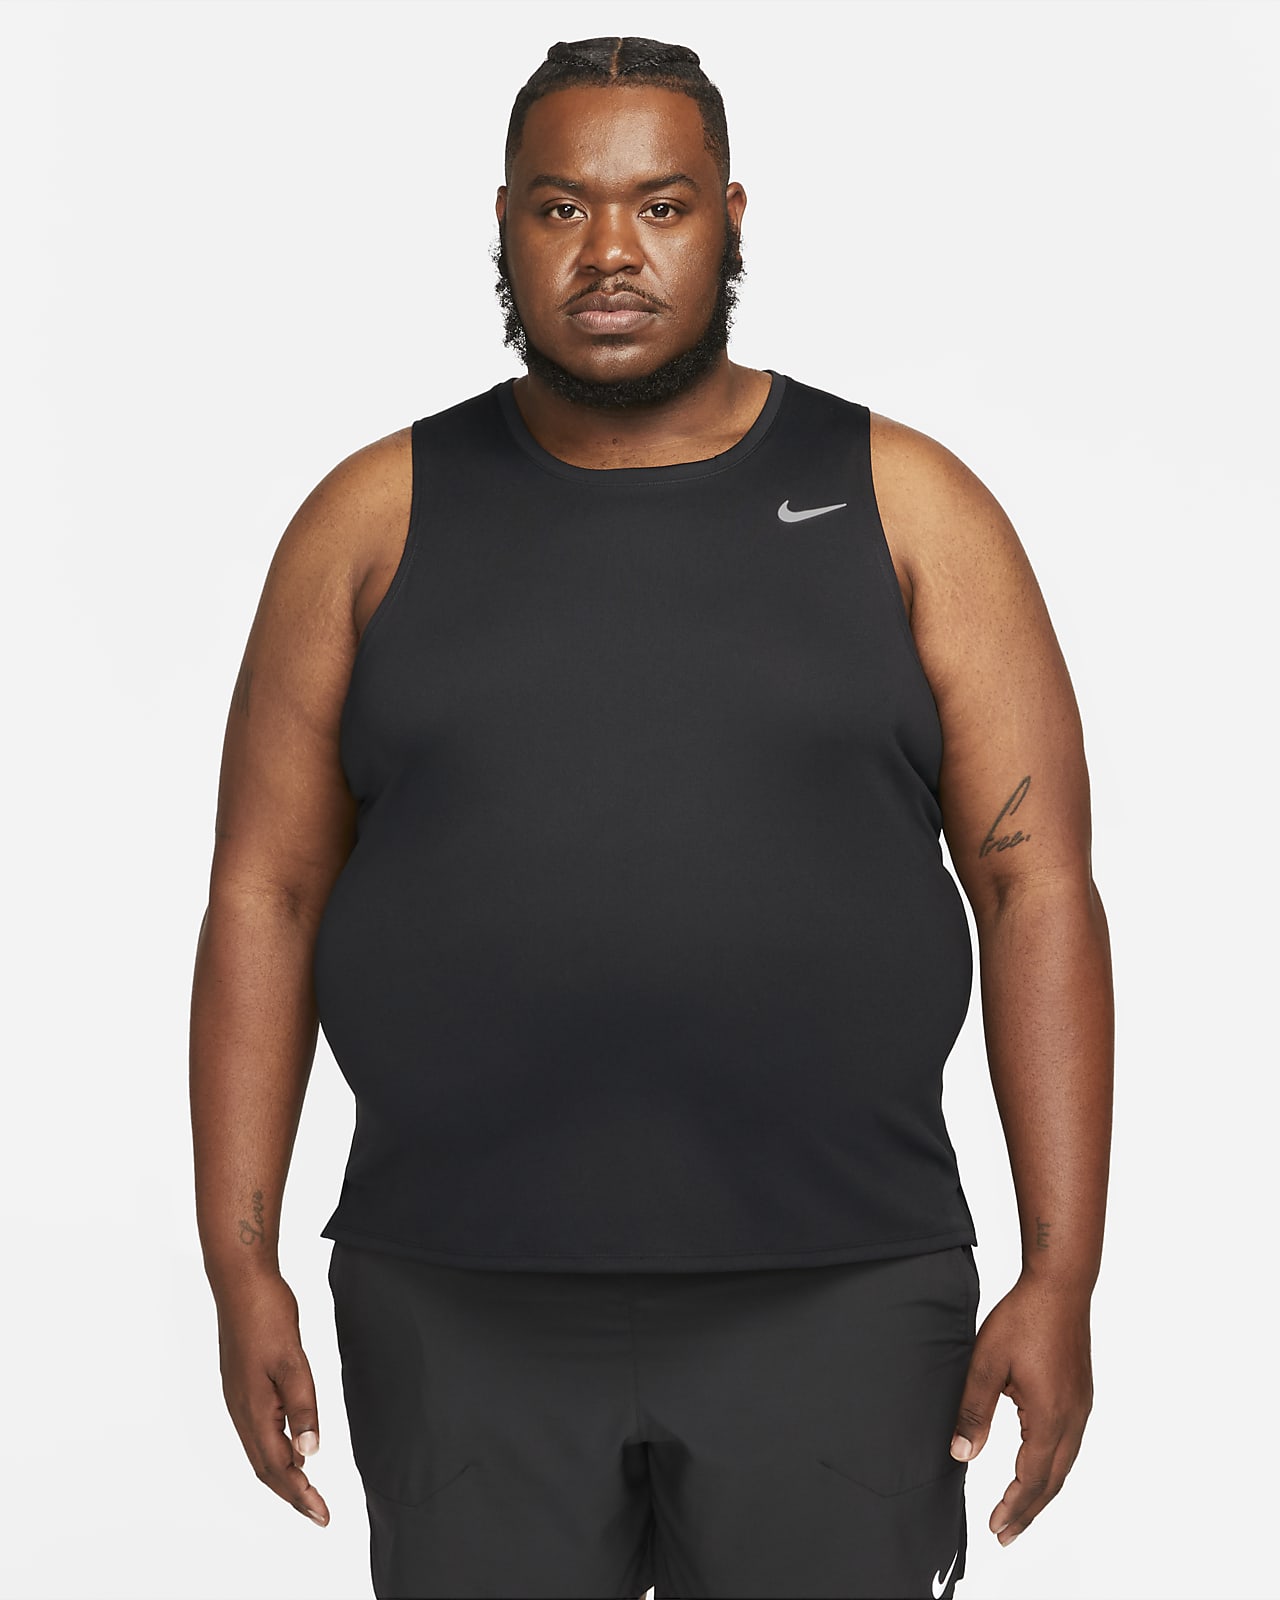 Débardeur Nike Dri-FIT Miler - Nike - Homme - Entretien physique